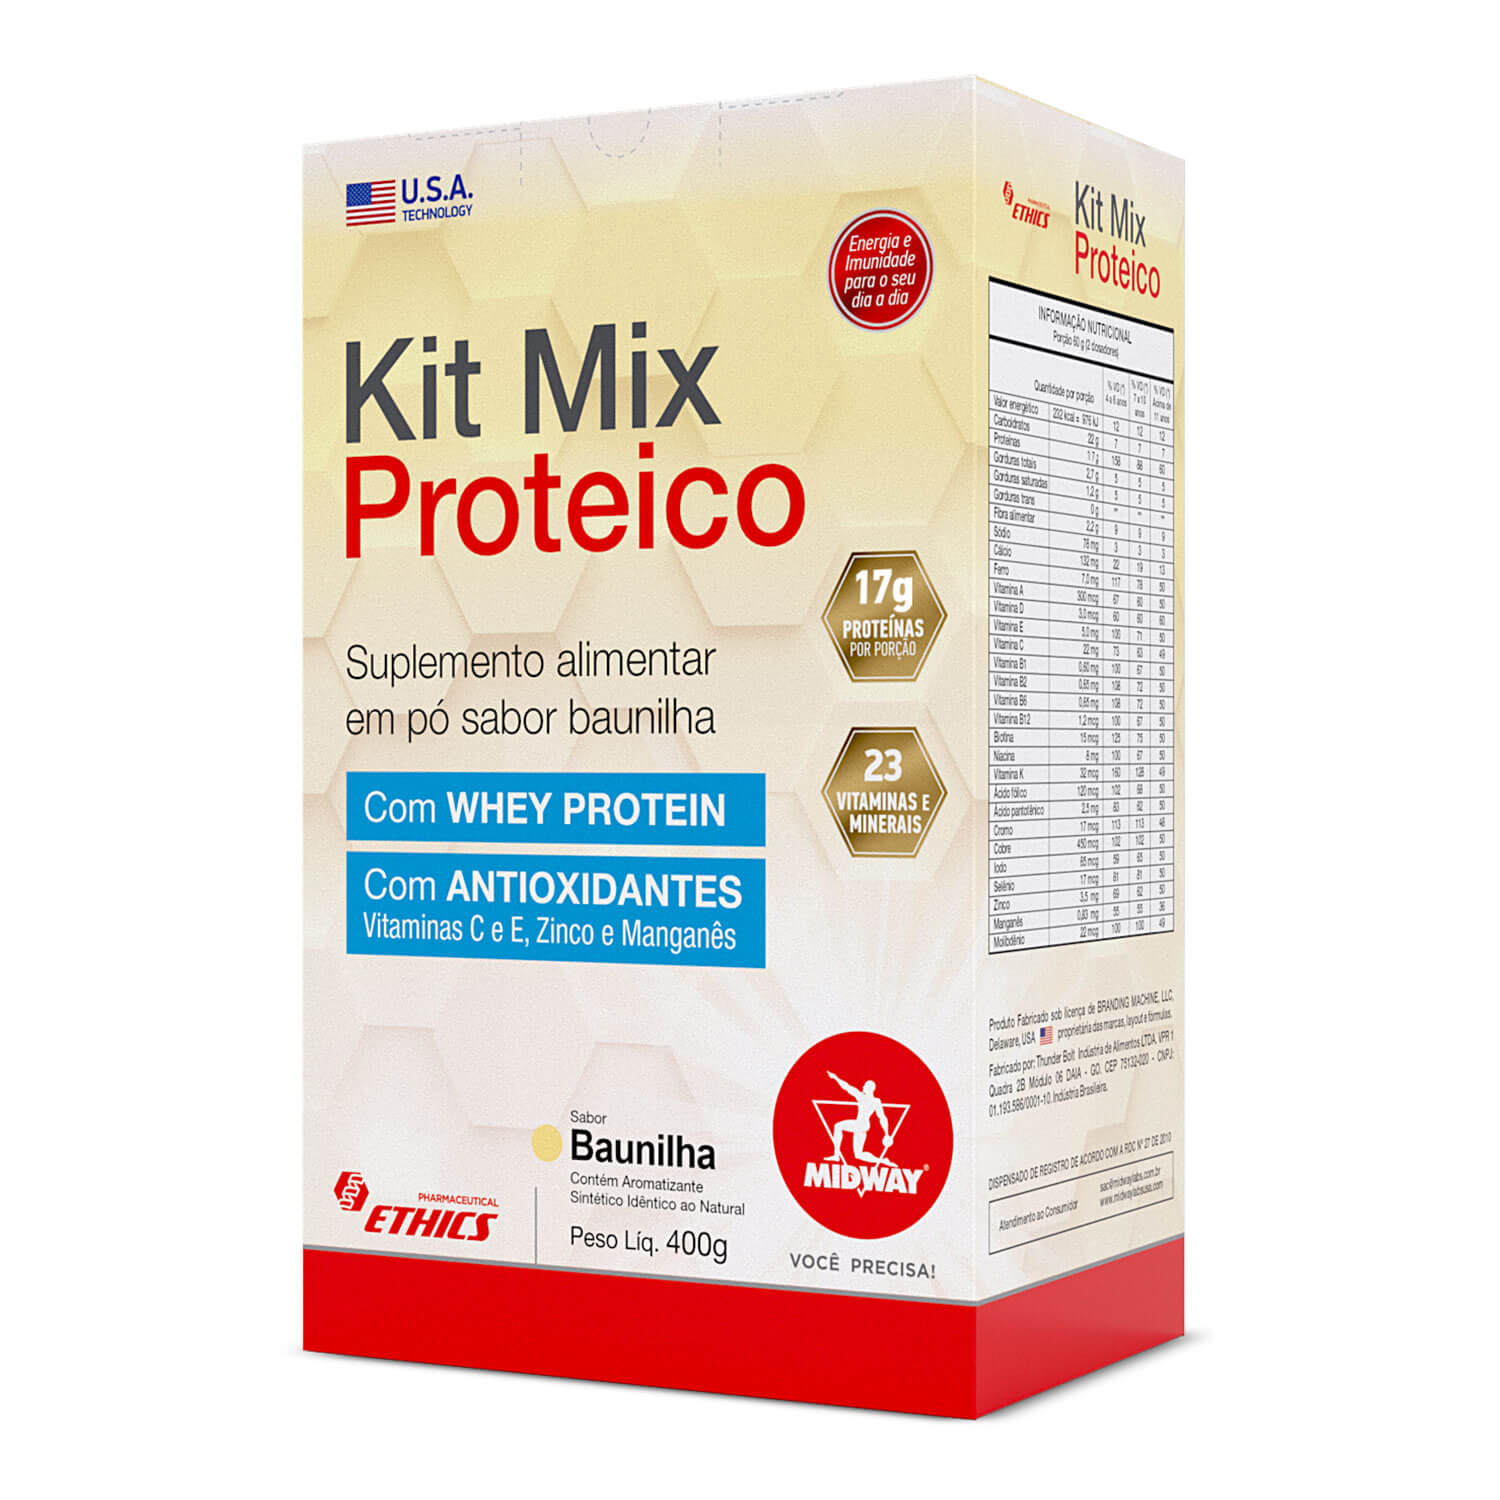 Kit Mix Proteico